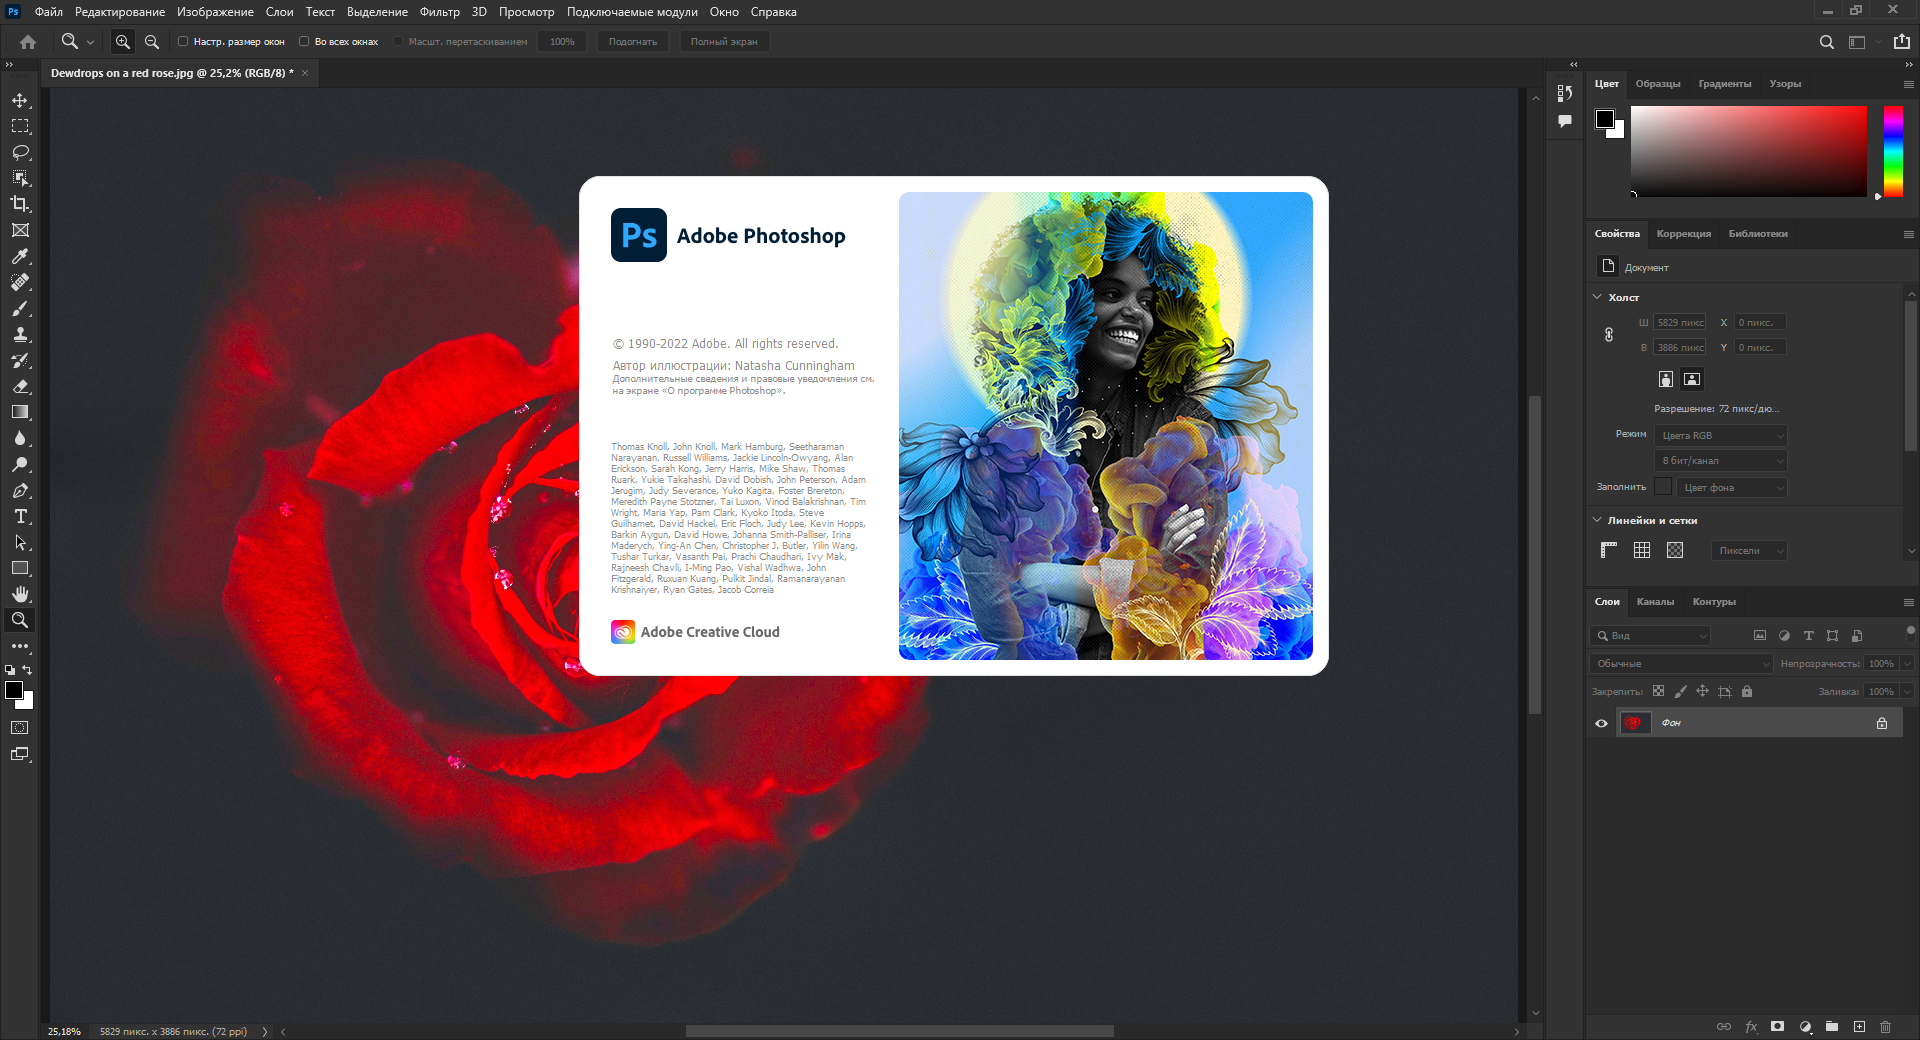 Adobe Photoshop 2022 Build 23.2.1.303 (x64) RePack by SanLex [Multi/Ru]